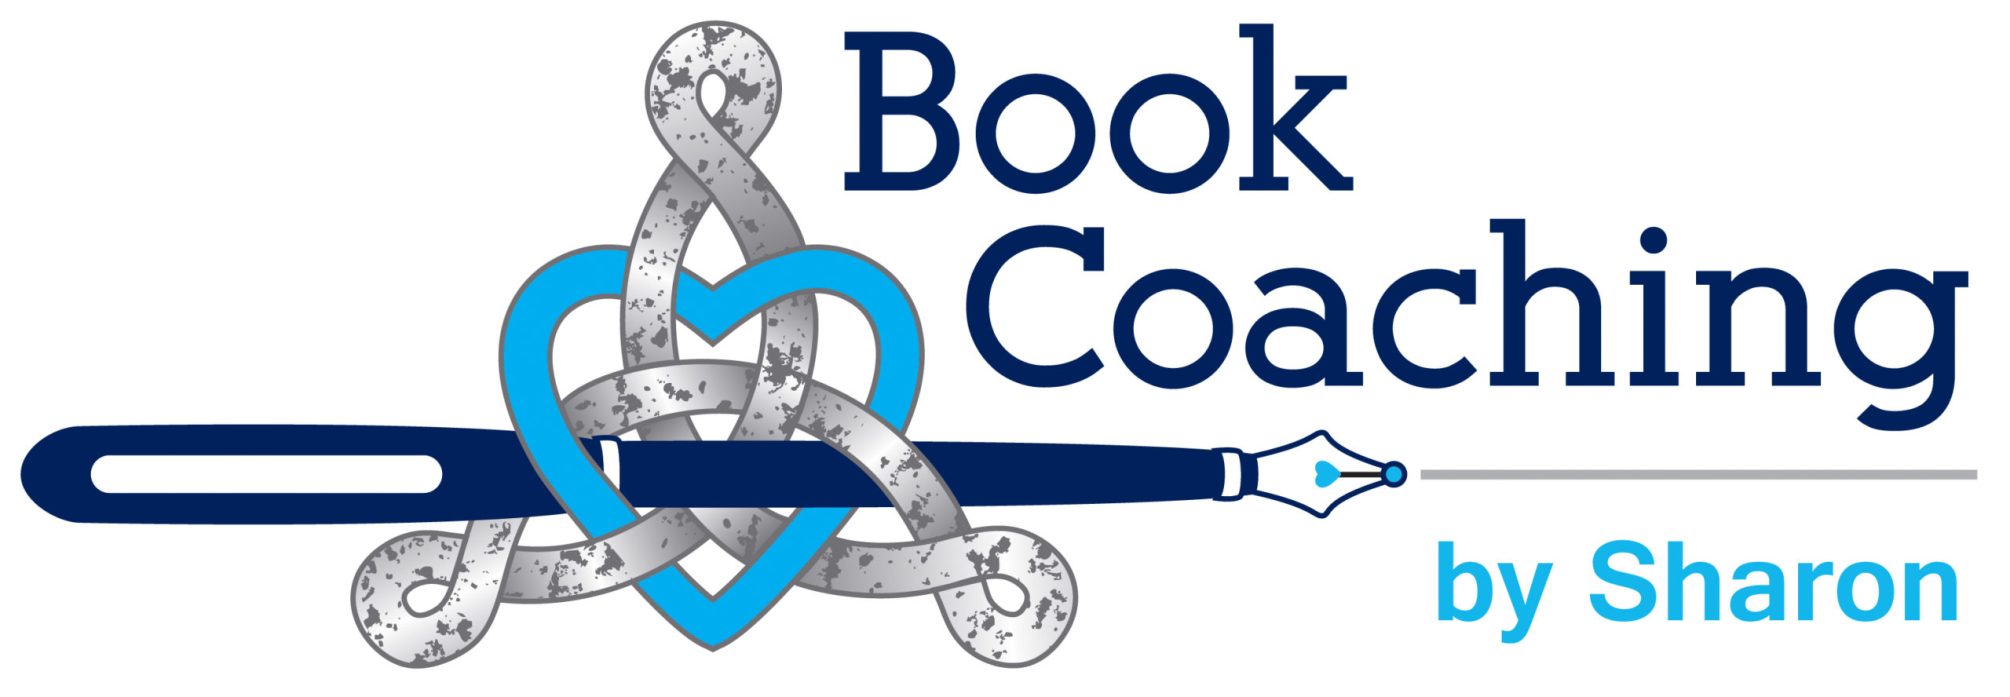 book coaching